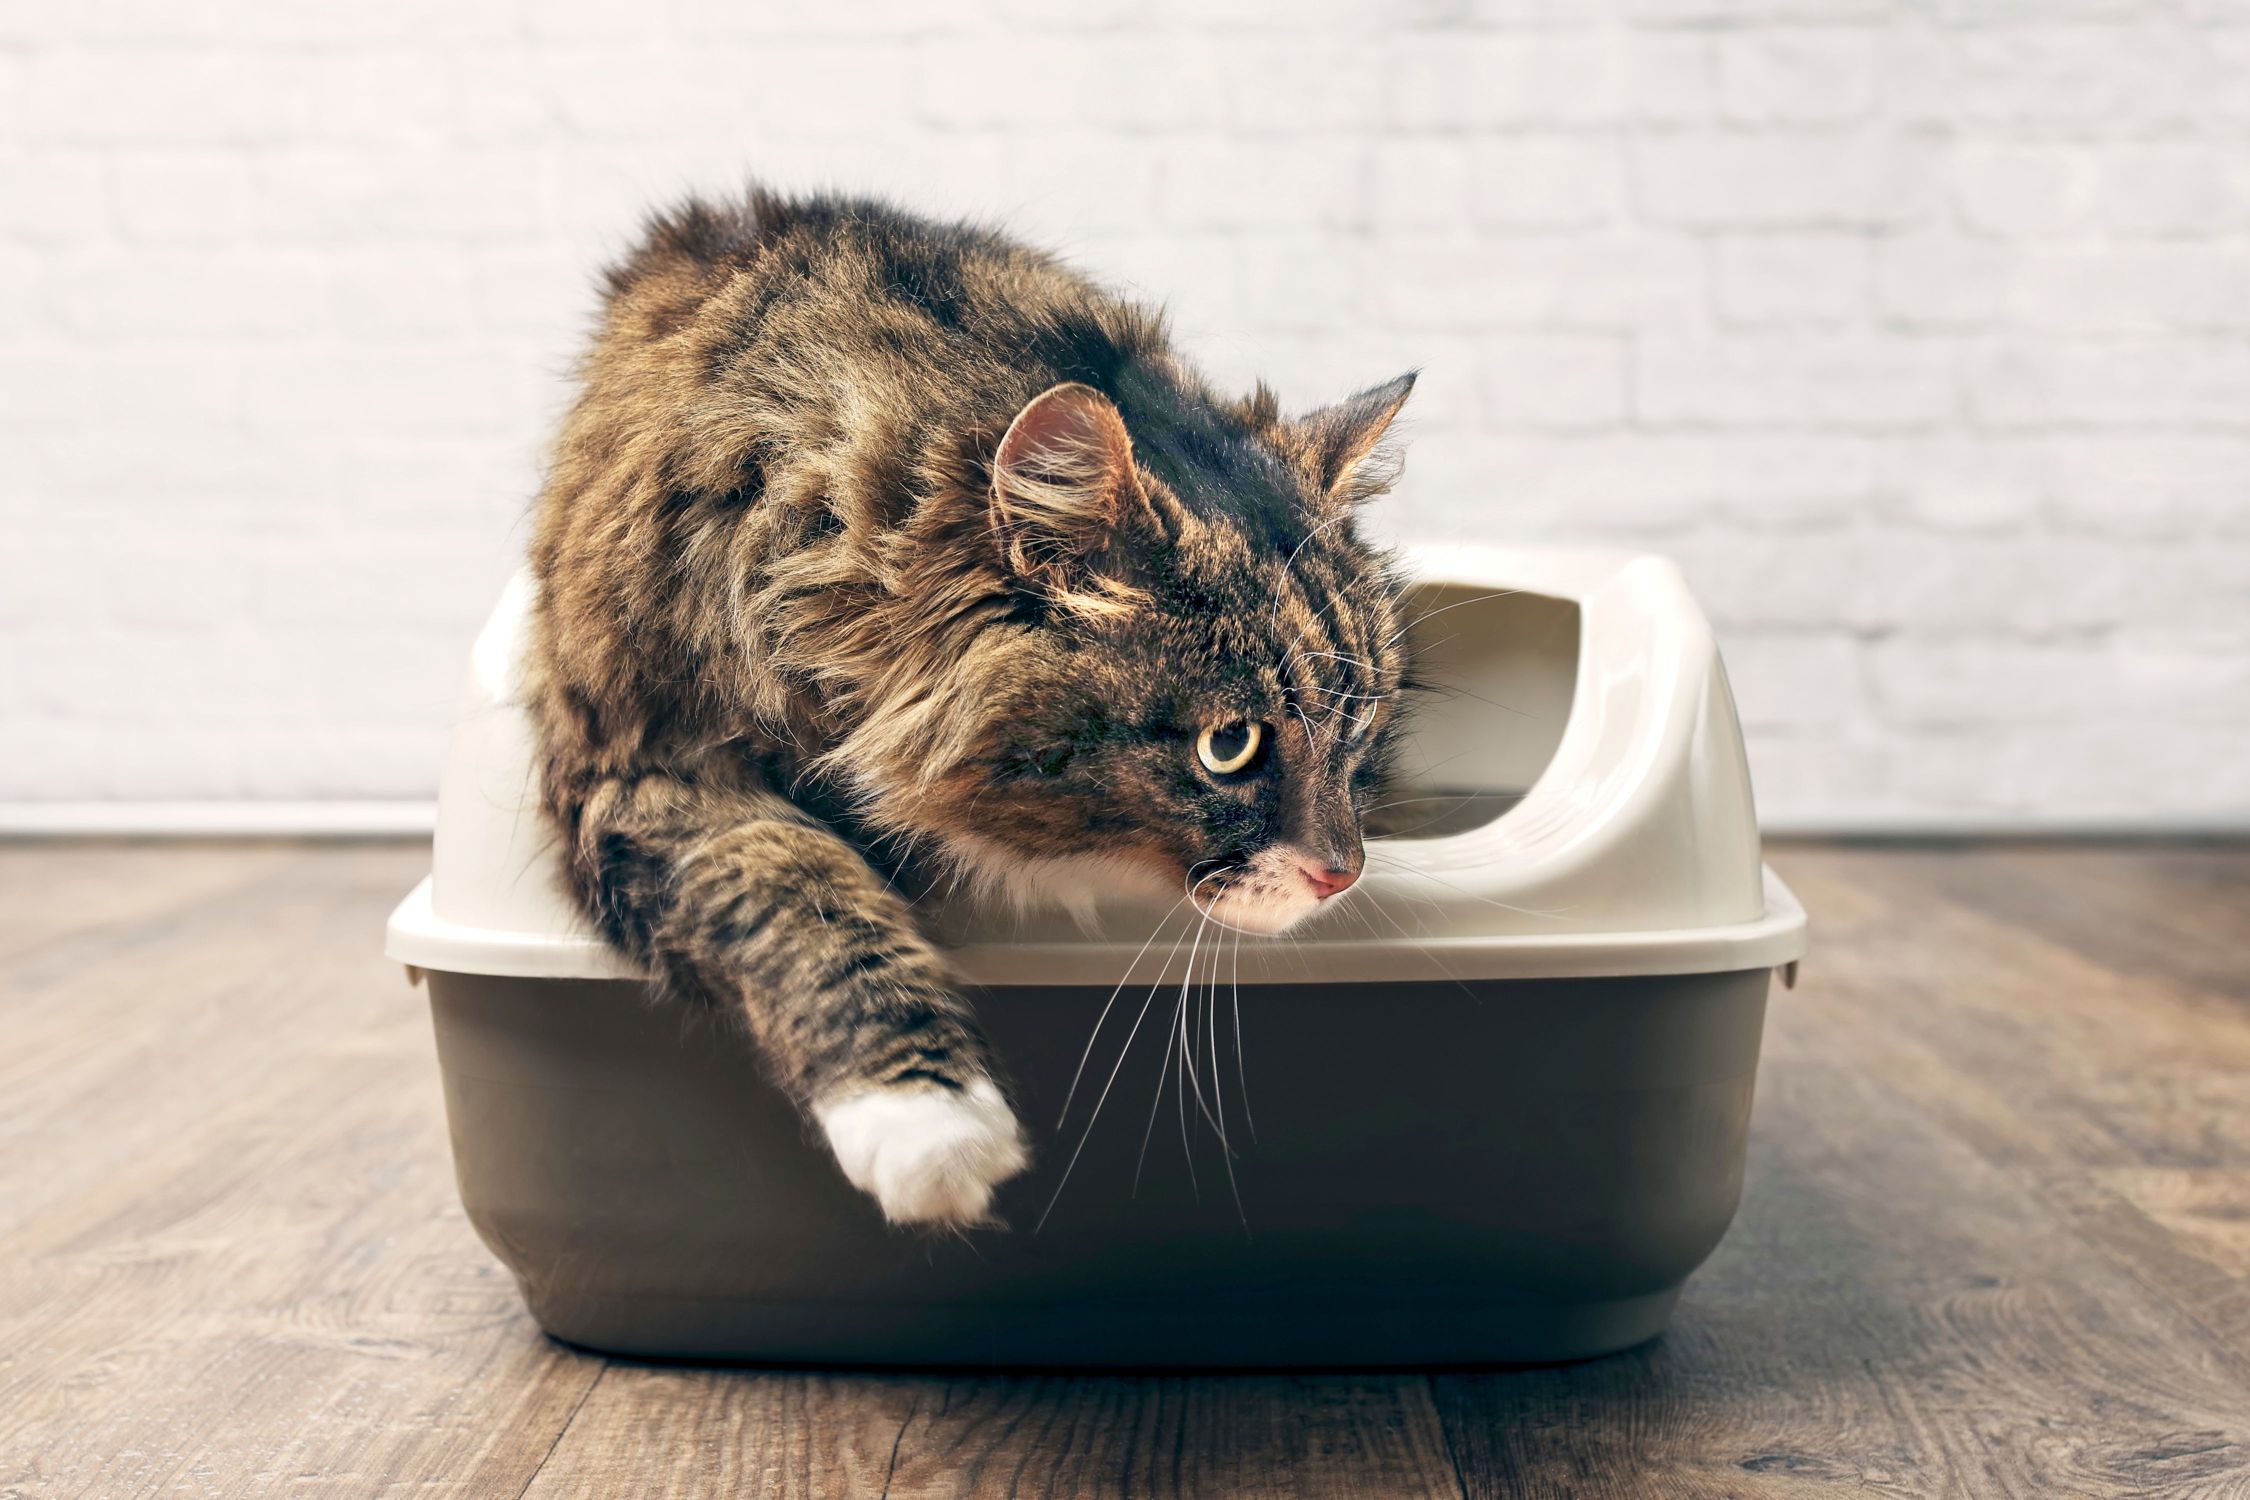 Katzenversicherung Blasentzündung: Katze geht aus Katzentoilette